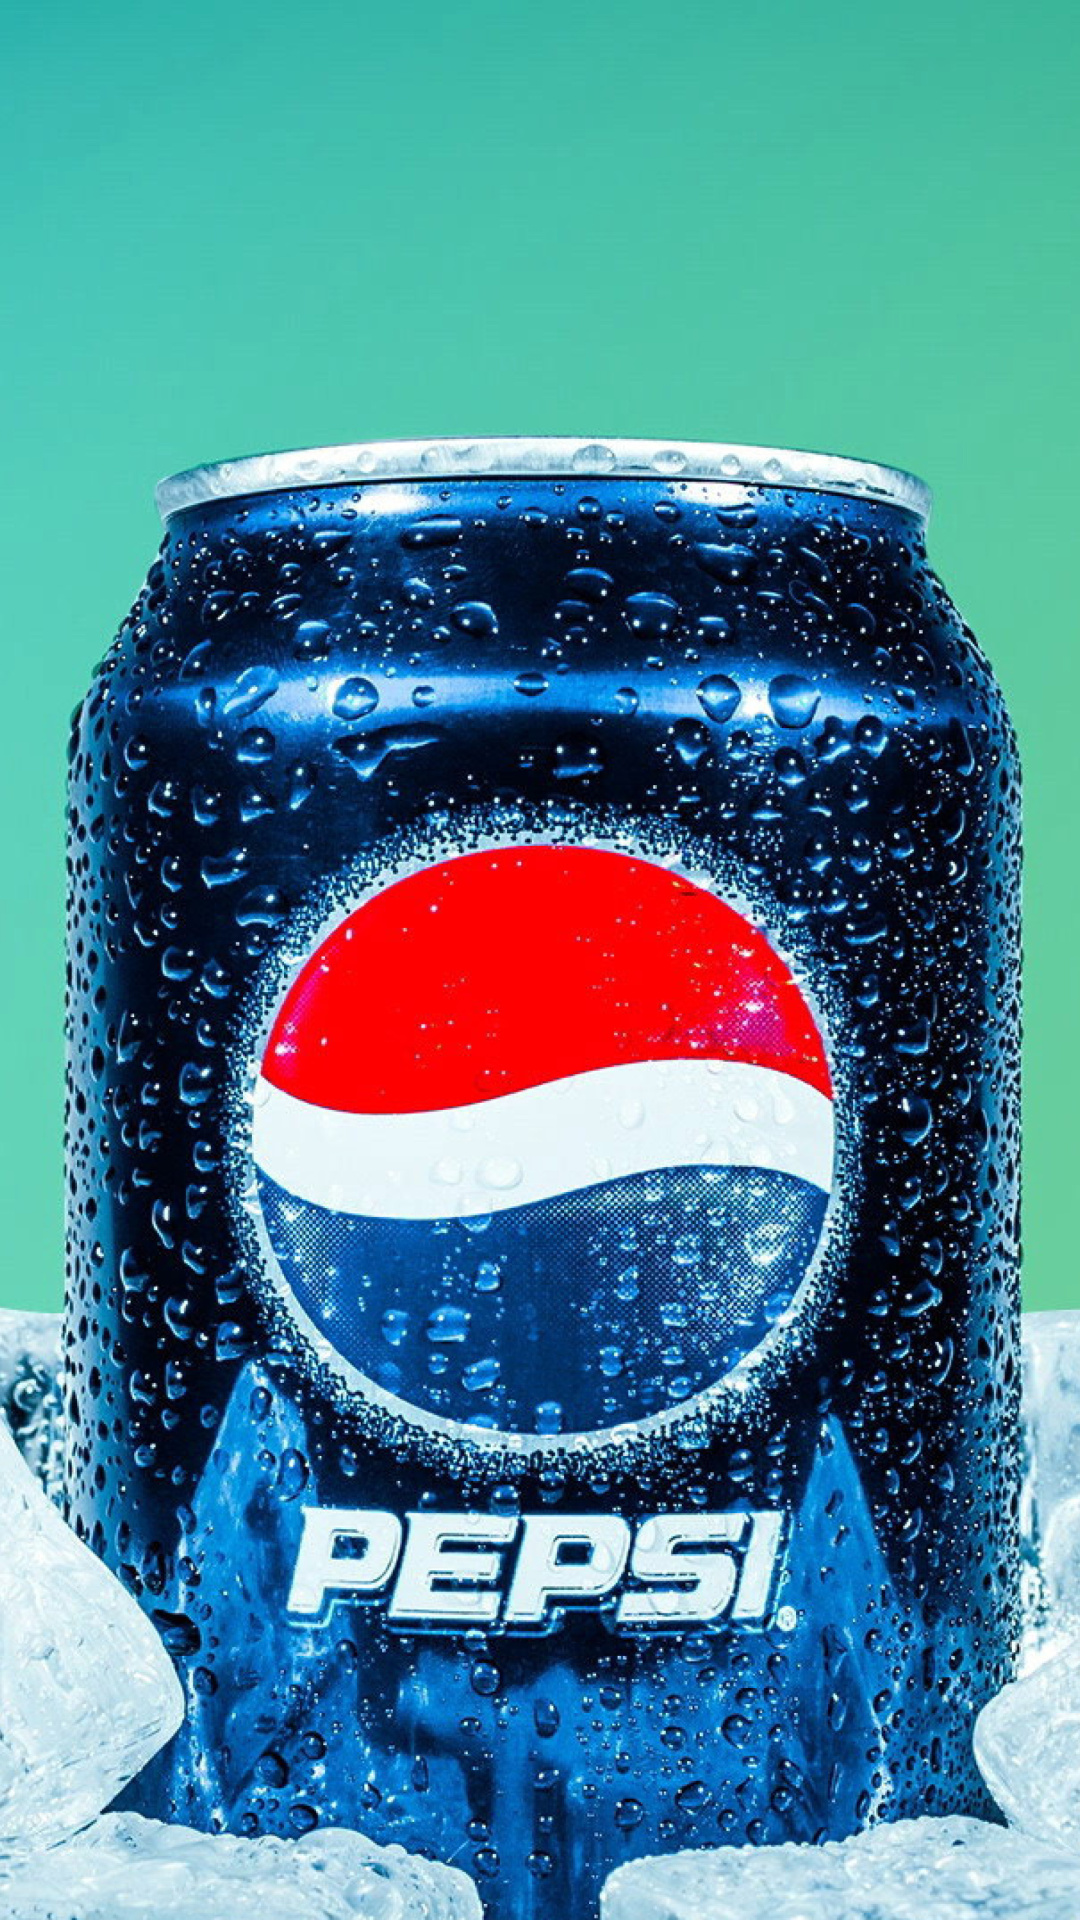 Обои Pepsi in Ice 1080x1920